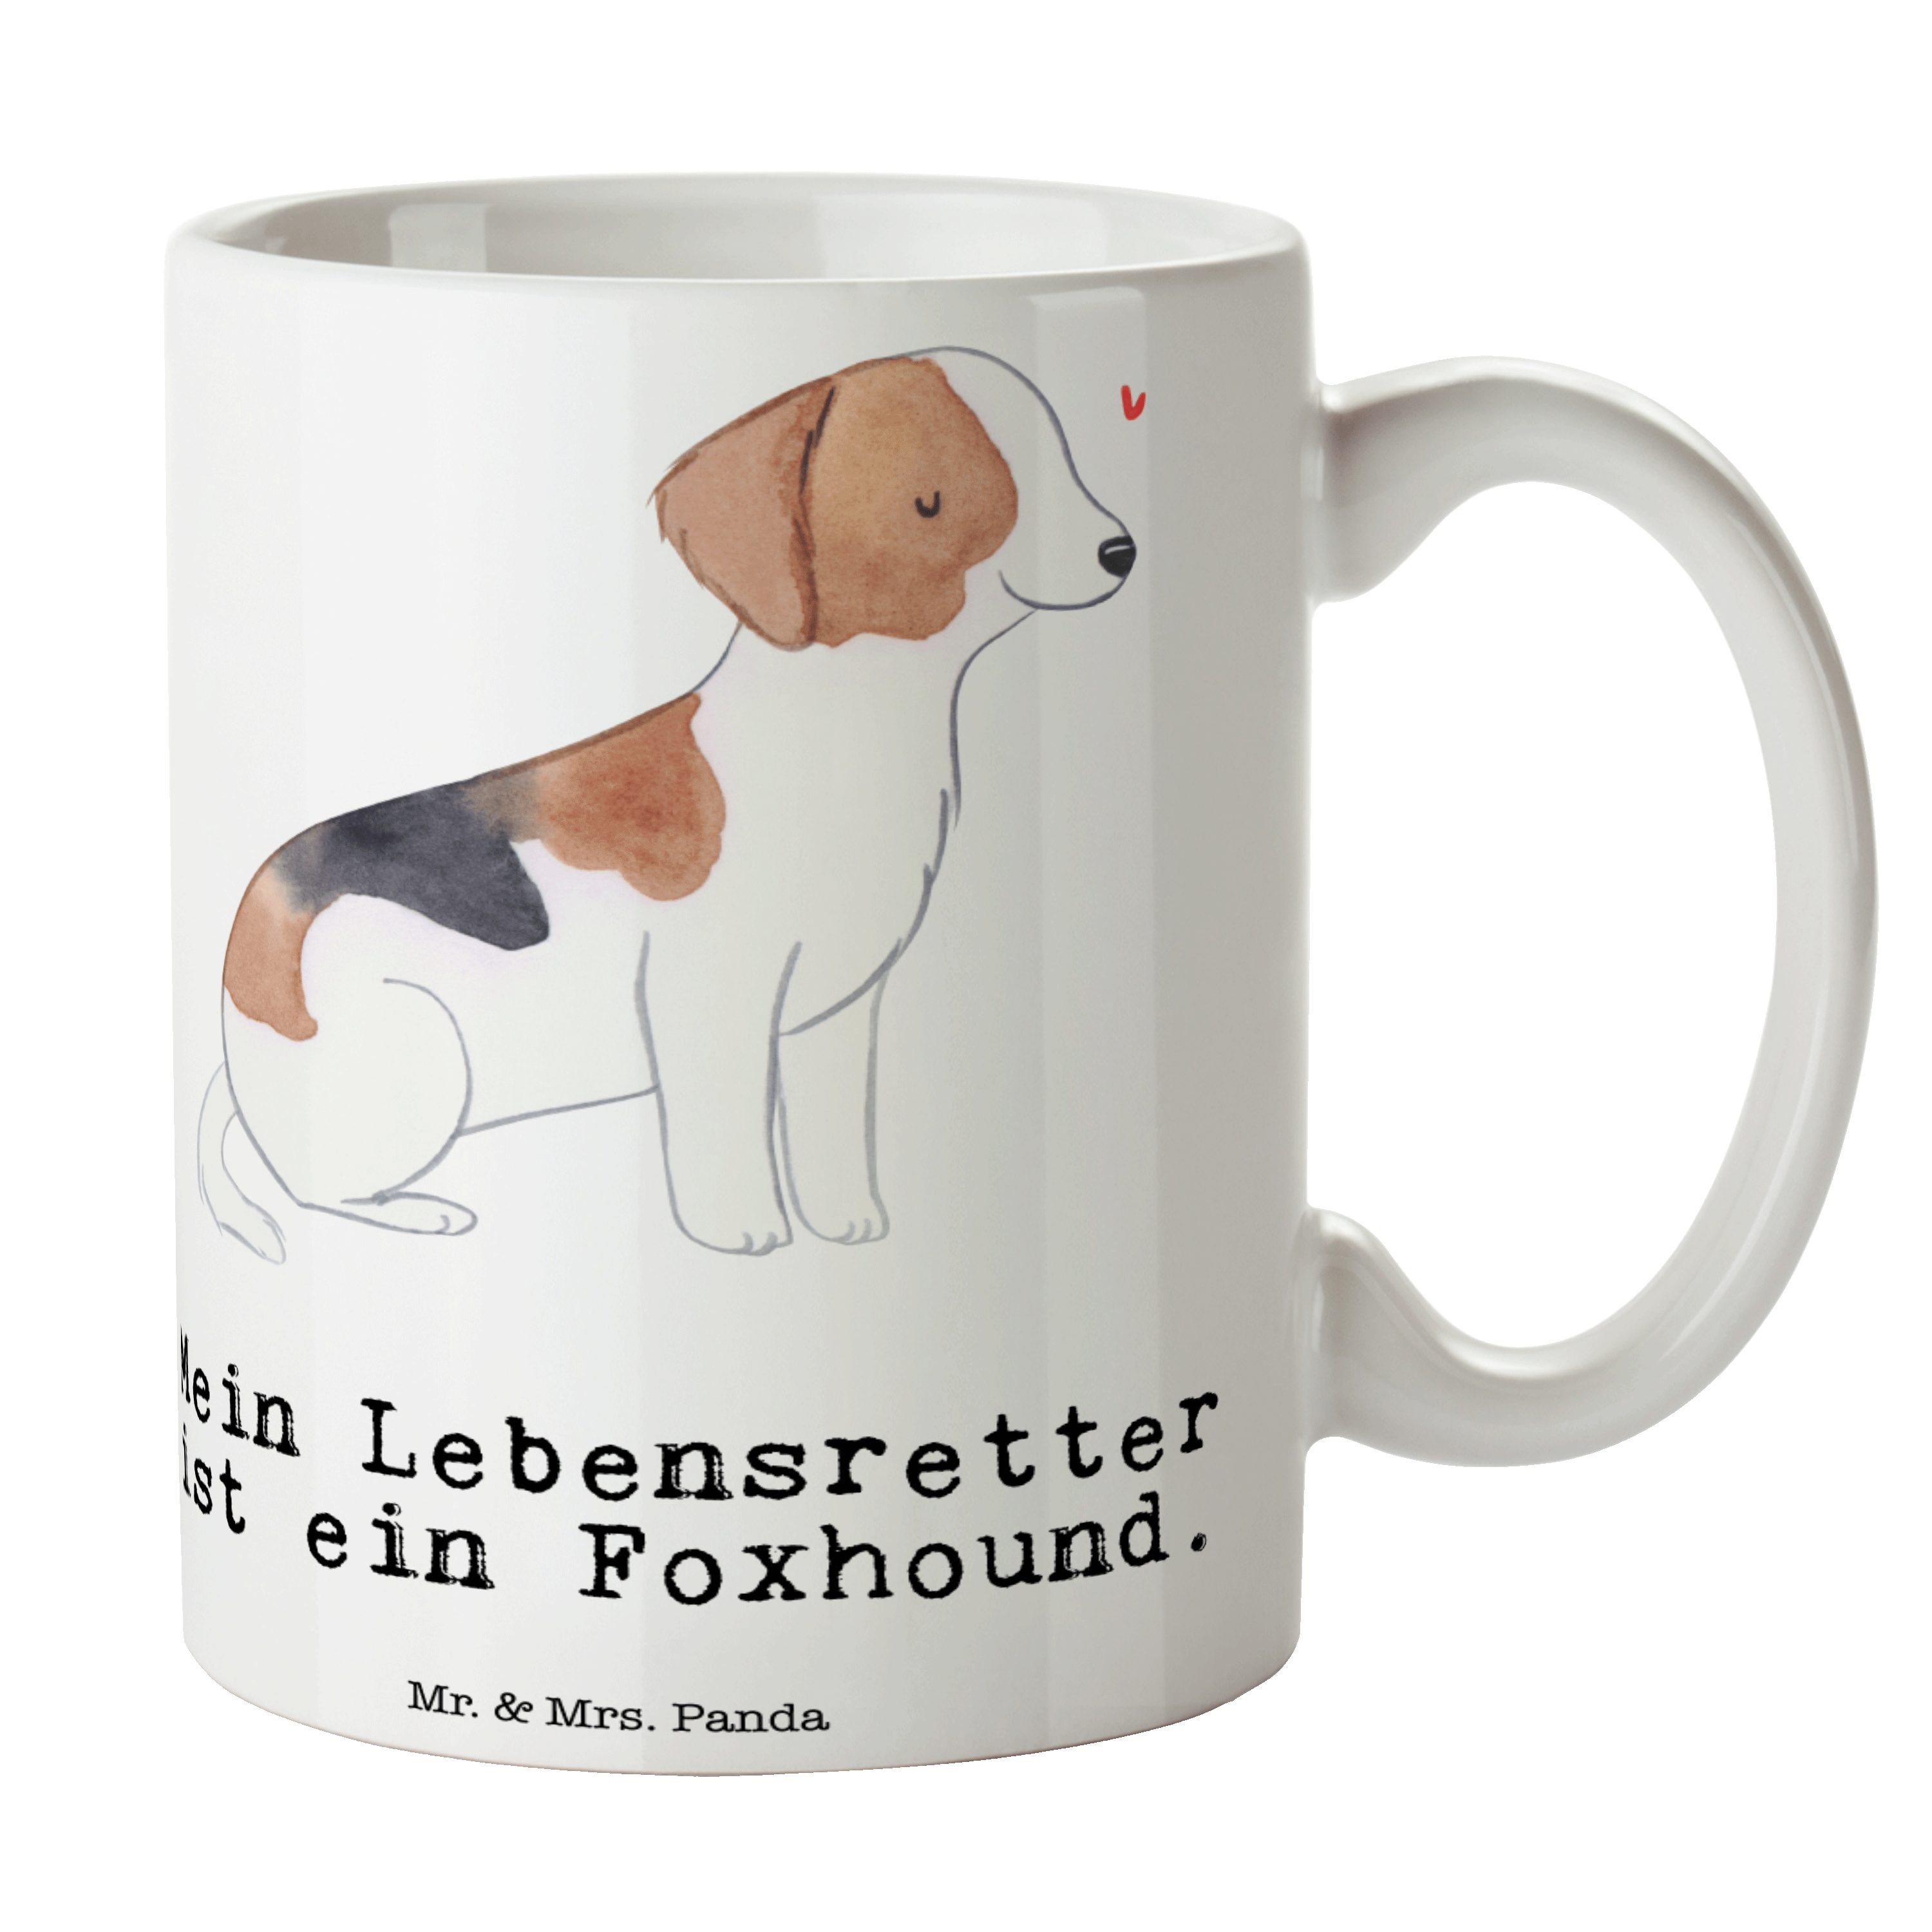 Mr. & Mrs. Panda Tasse Foxhound Lebensretter - Weiß - Geschenk, Laufhund, Welpe, Kaffeebeche, Keramik